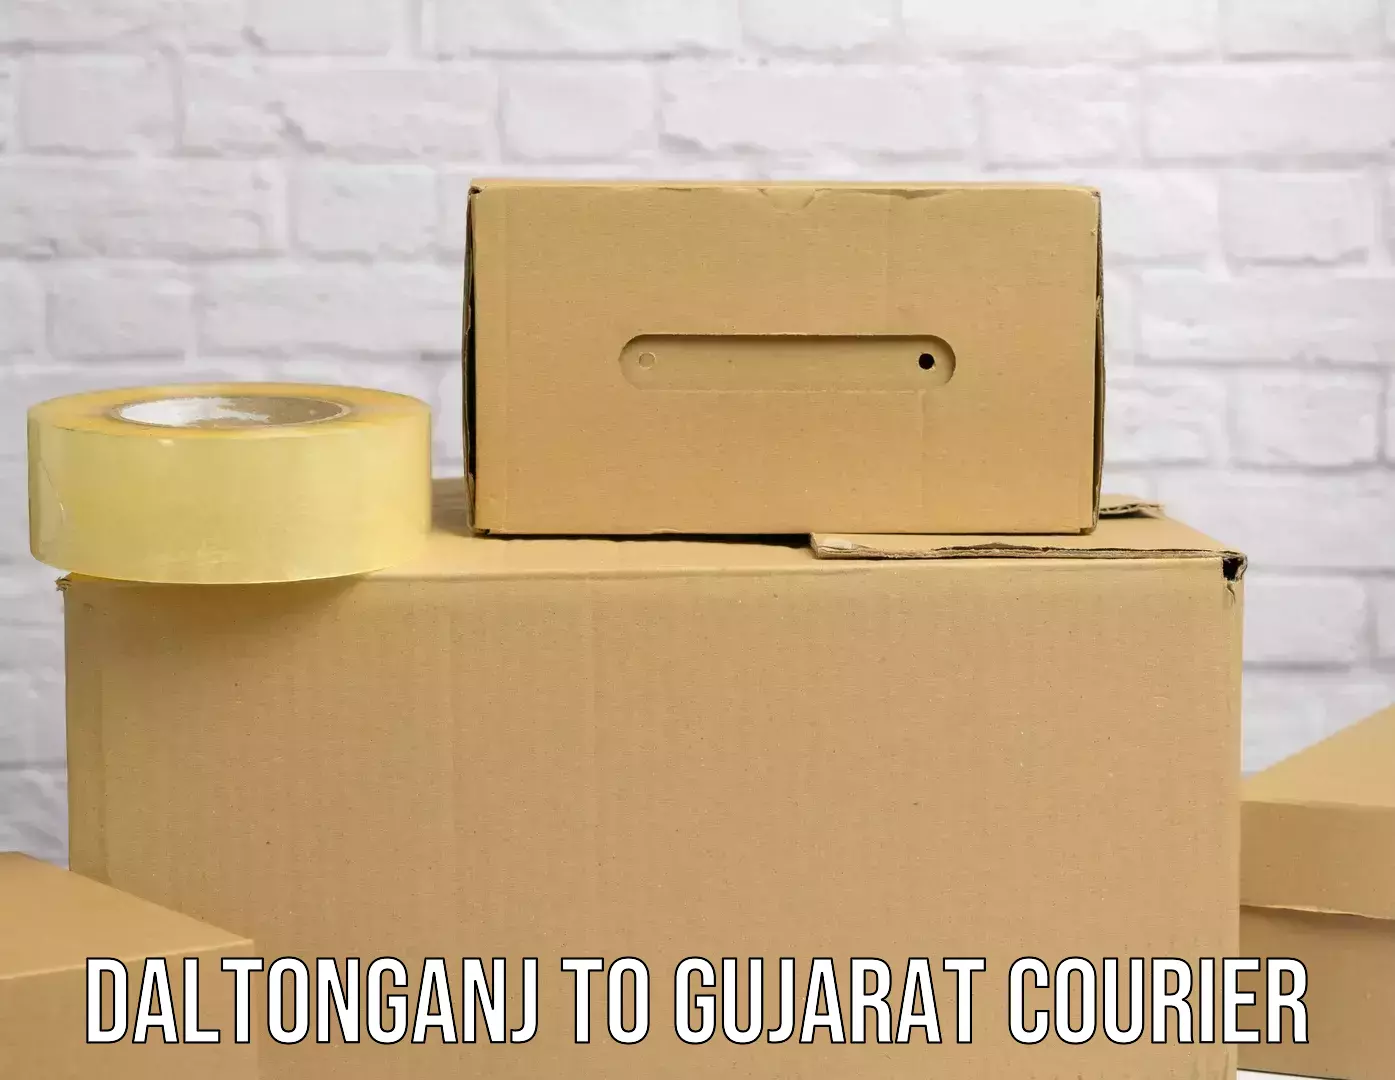 Courier service partnerships Daltonganj to Vyara